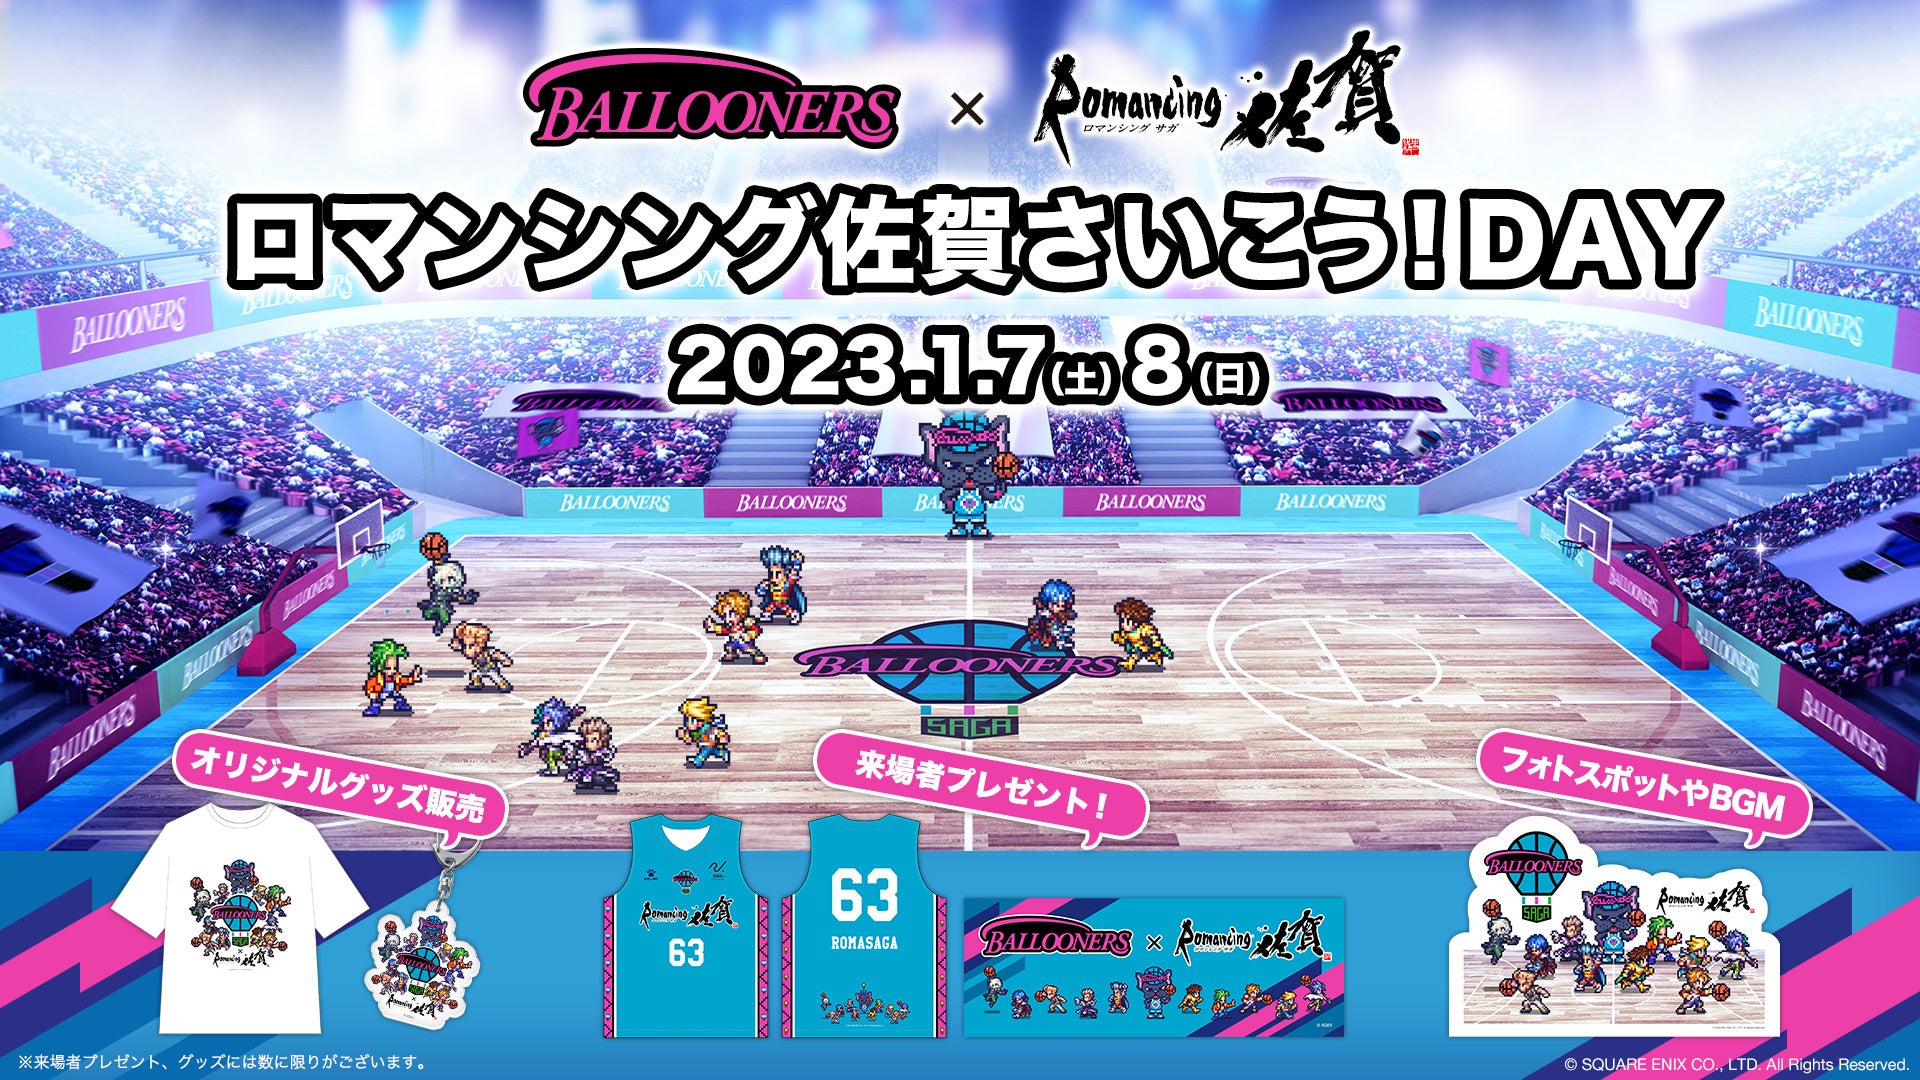 第98回 天皇杯 全日本バスケットボール選手権大会セミファイナル チケット販売日程のお知らせ